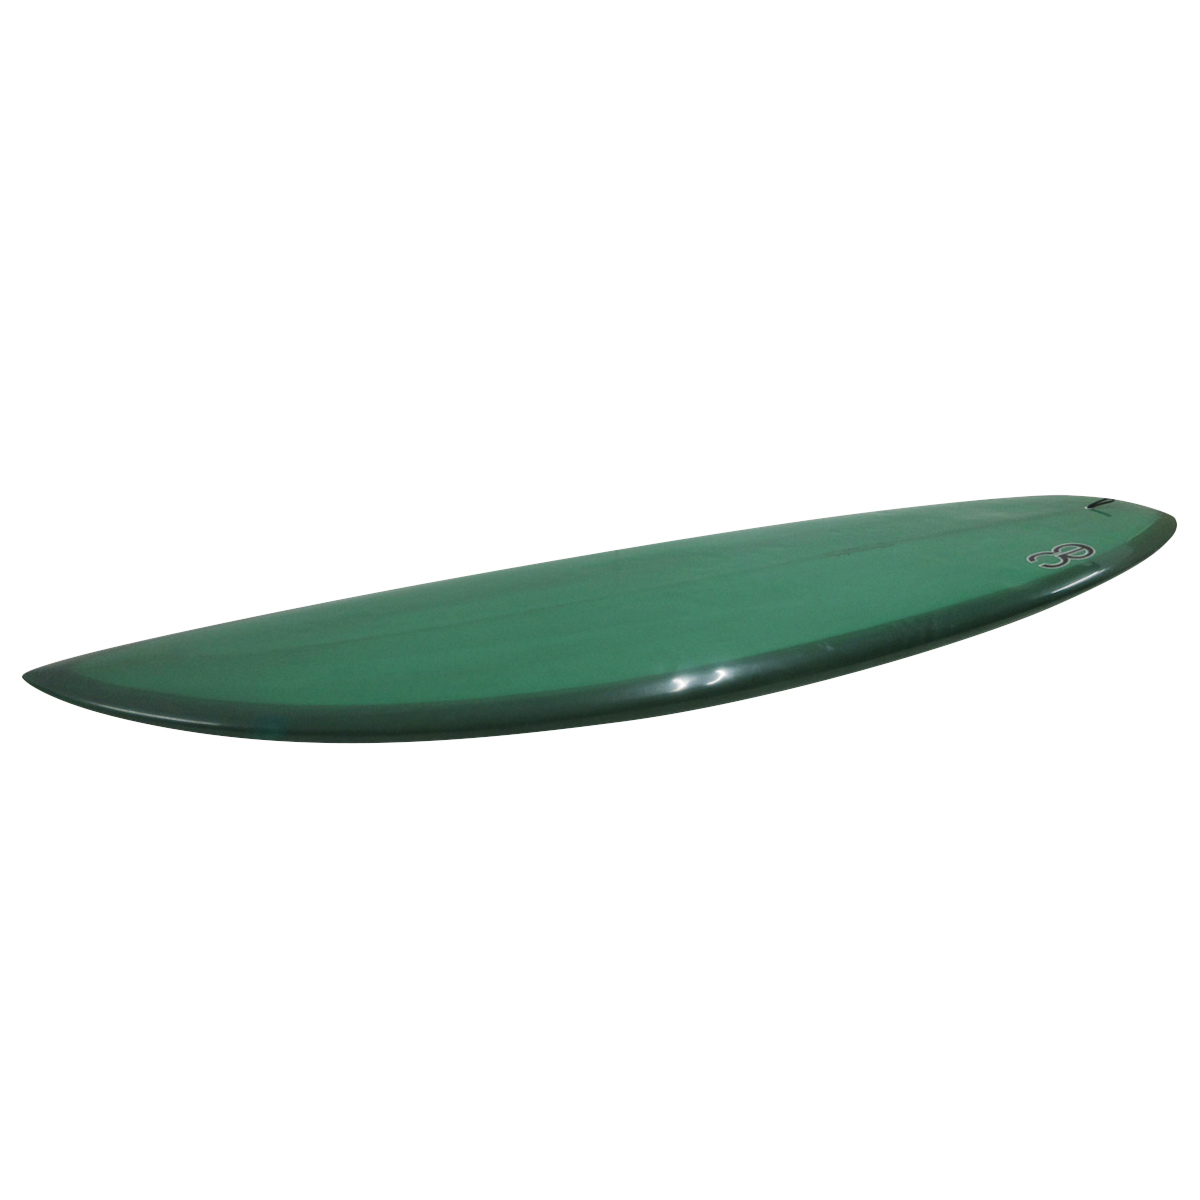 EC Surfboards  / 5'11 Cosmic Fonzer